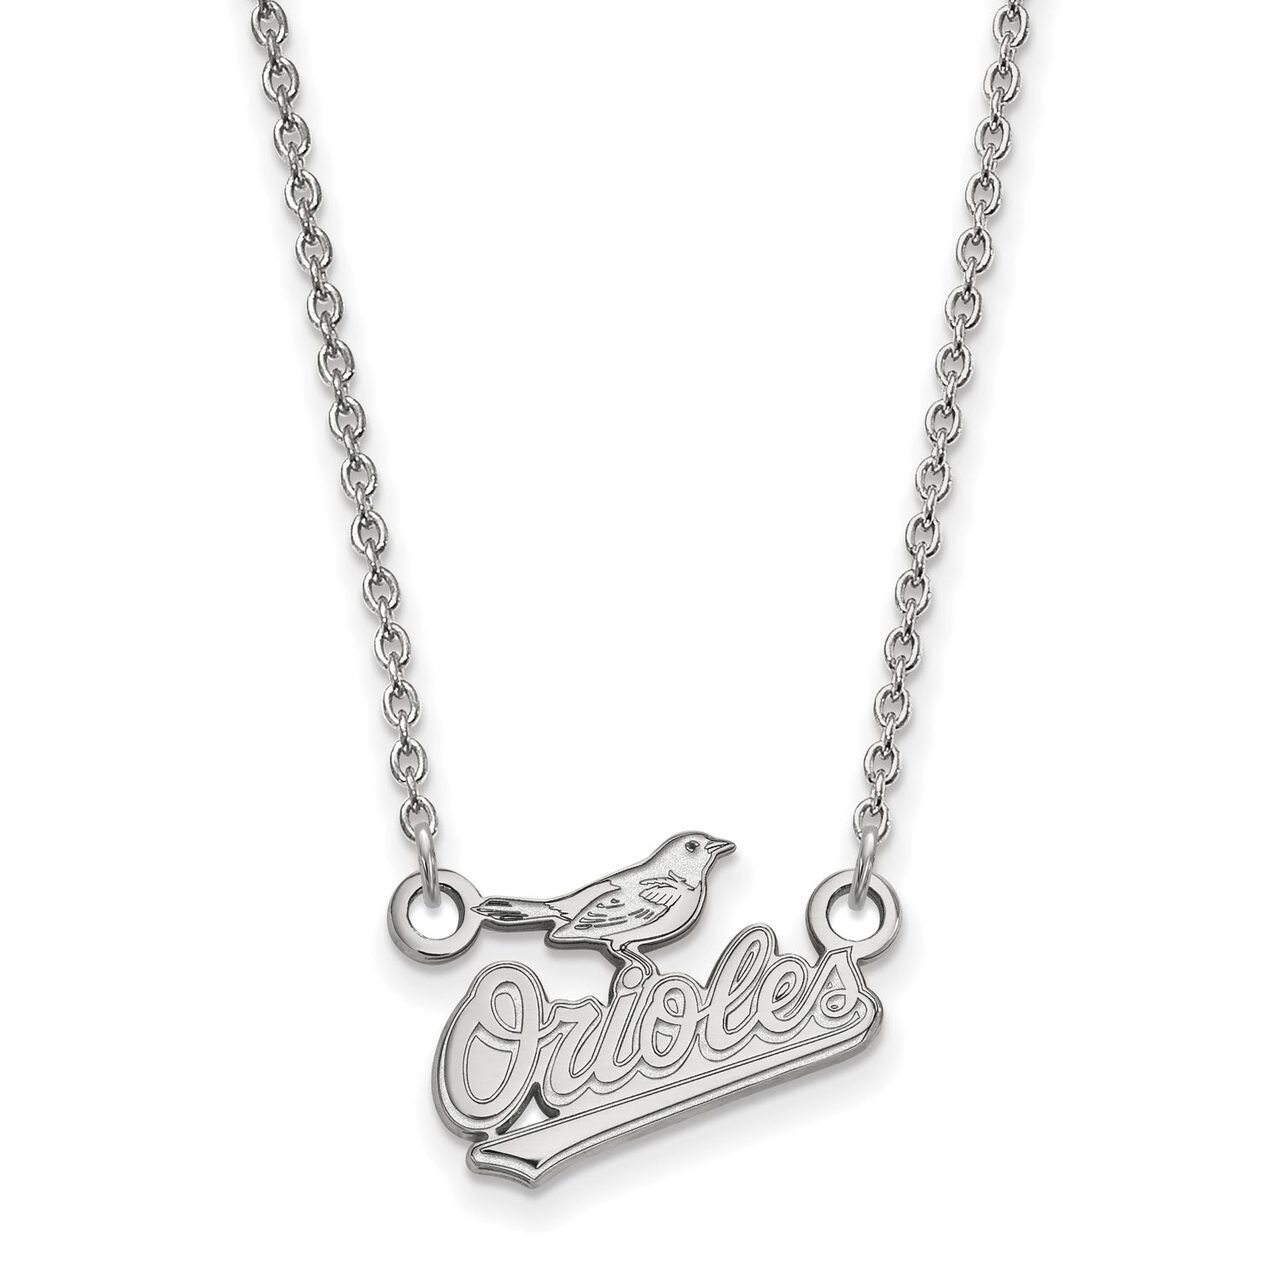 Baltimore Orioles Small Pendant with Chain Necklace 14k White Gold 4W007ORI-18